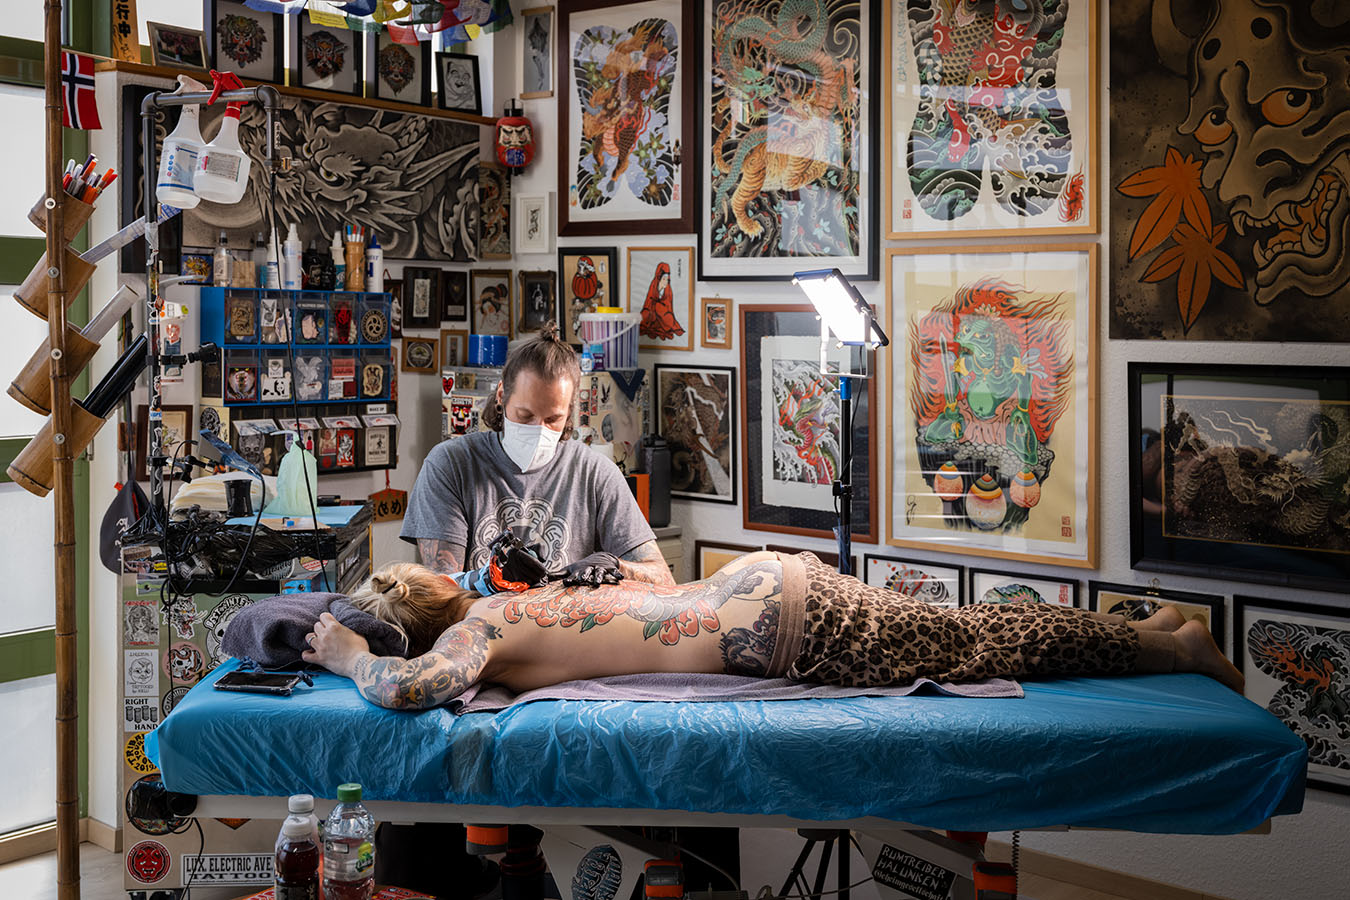 Tattoostudio Hakutsuru, Bochum - Portraitfotografie: Sandor Jordan bei der Arbeit